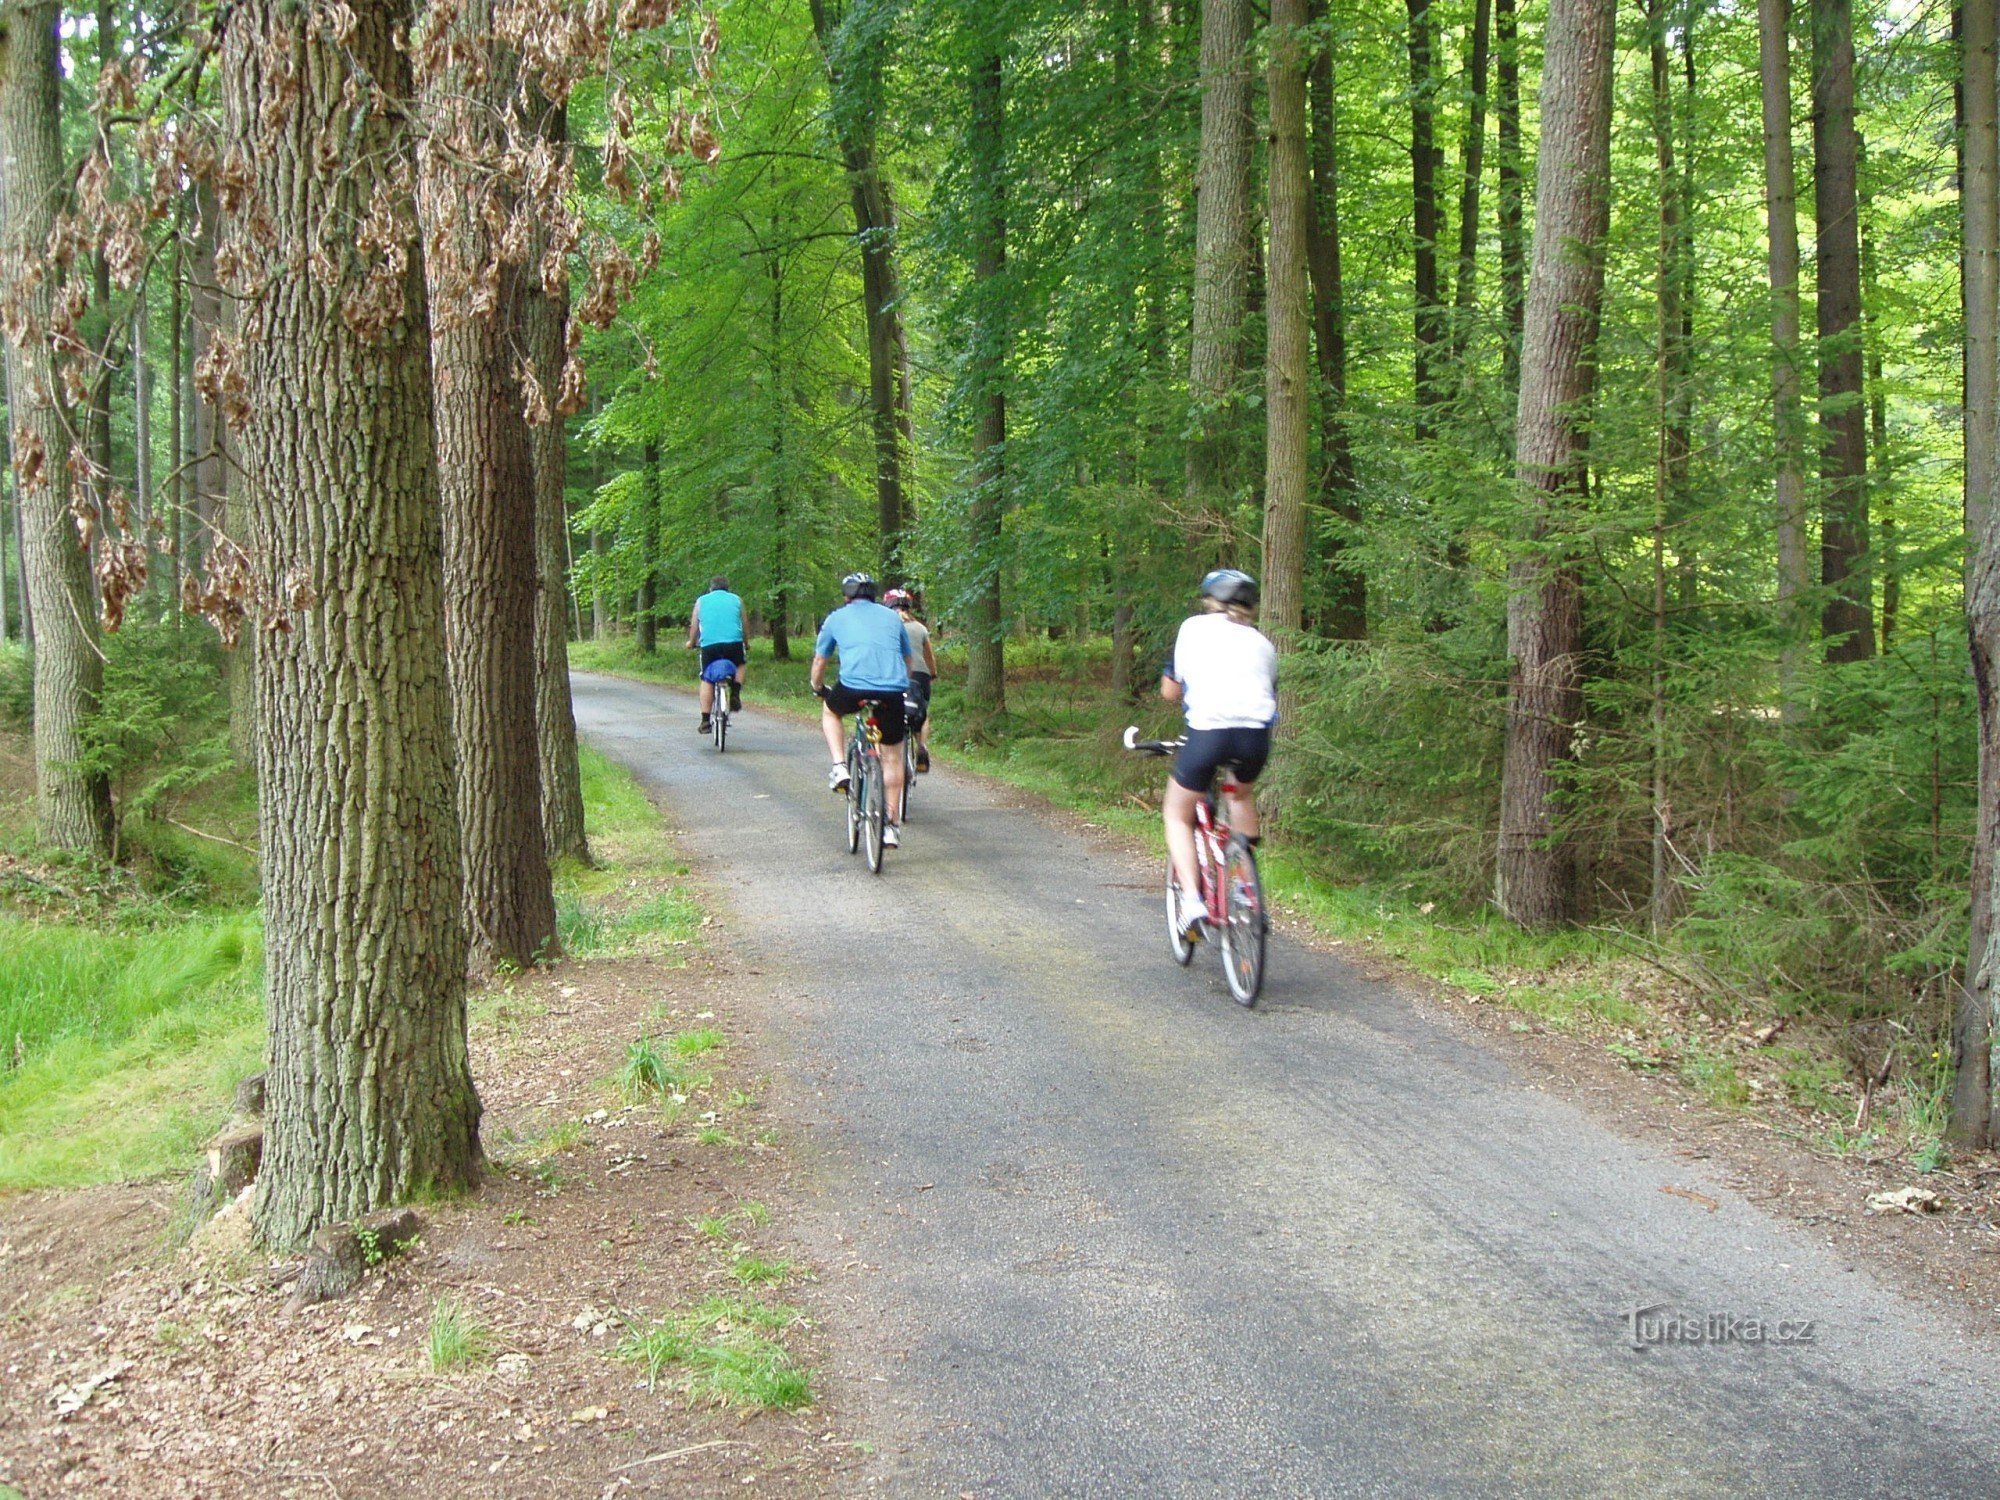 Les routes forestières pavées sont idéales pour faire du vélo dans la région de Třeboň